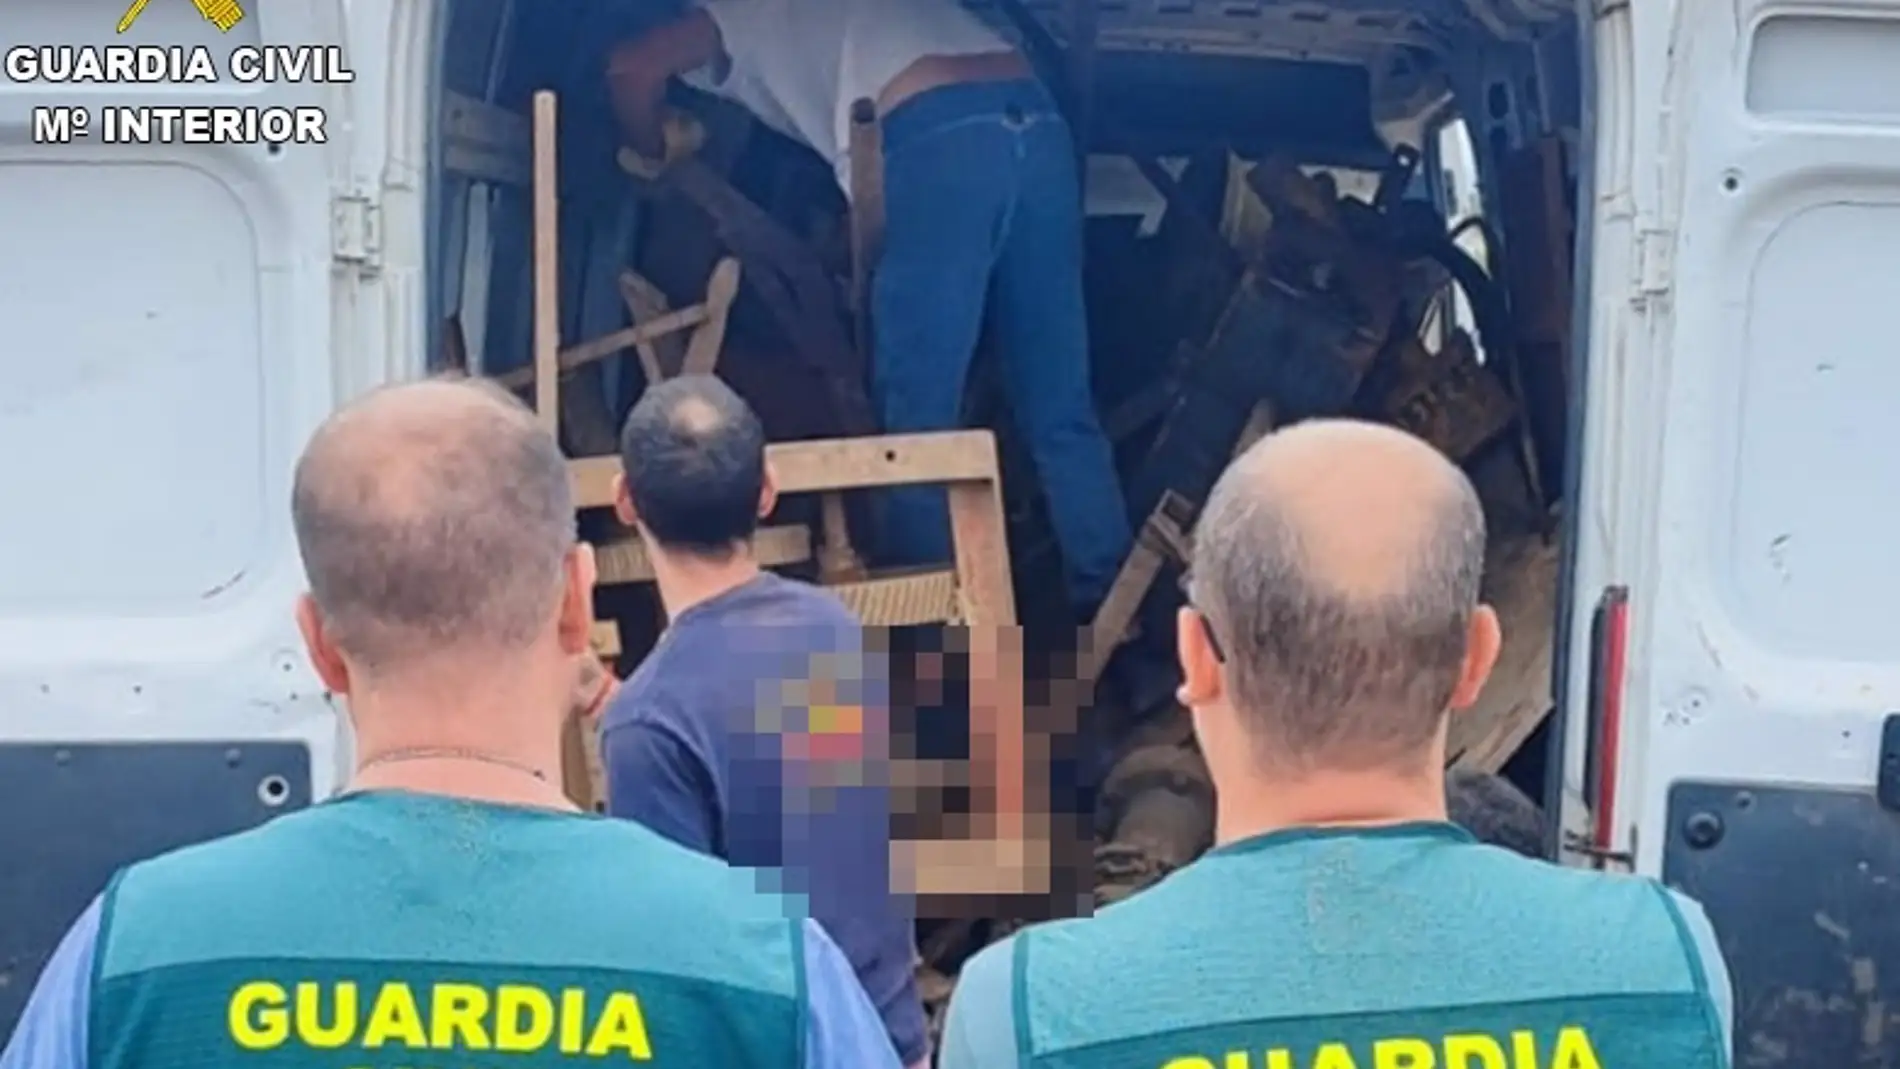 La Guardia Civil detiene a nueve miembros de un grupo organizado al que atribuye 33 robos en fincas agrícolas en Extremadura